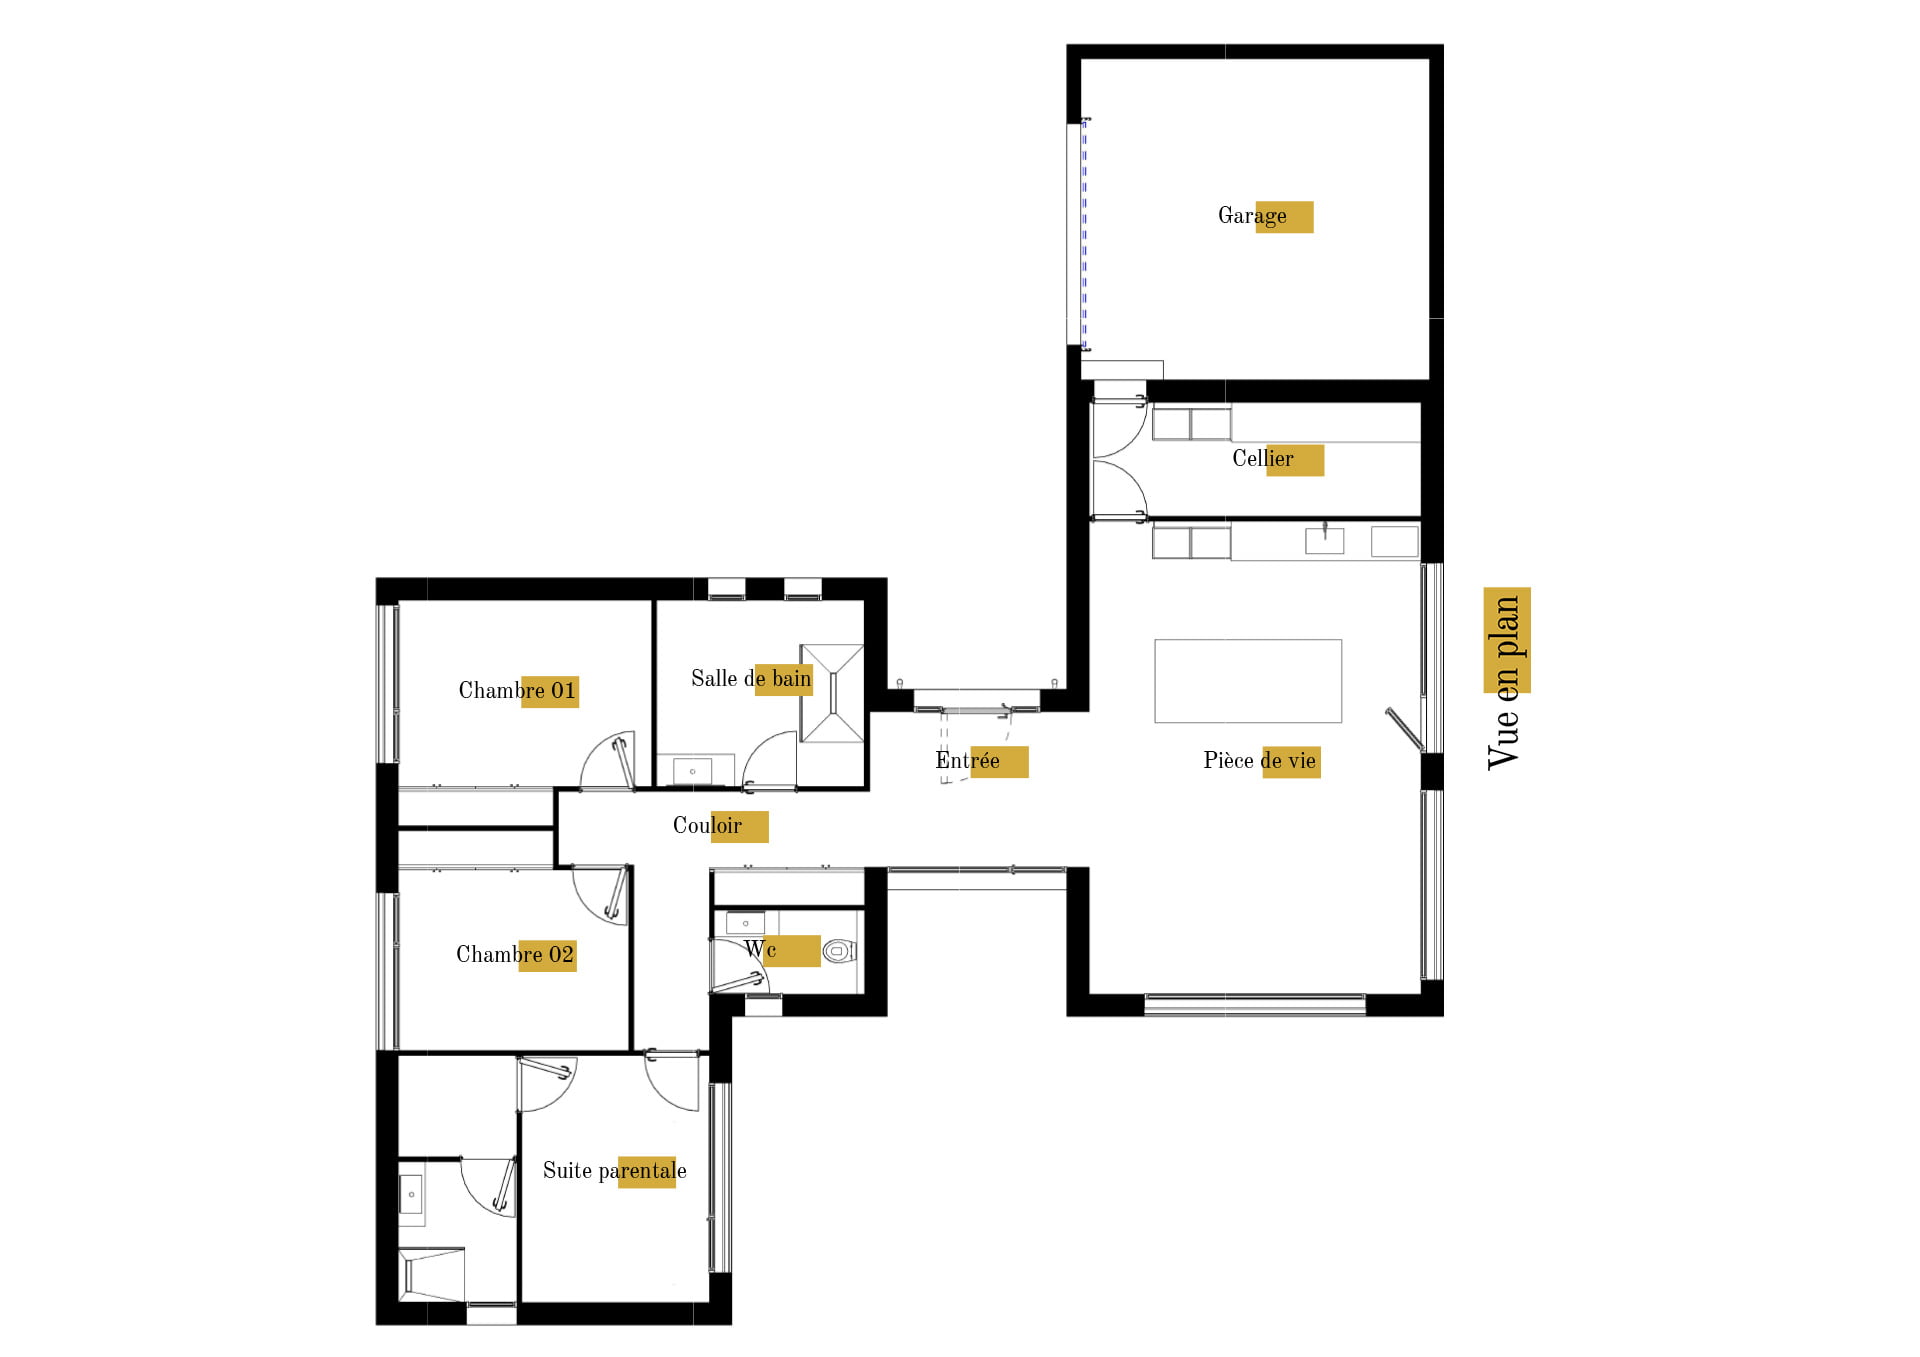 Plan gratuit à télécharger maison moderne californienne contemporaine / 127m² / T4 / plain-pied / piscine / garage / toit terrasse. Collection Orion, maison Epsilon - Vue en Plan